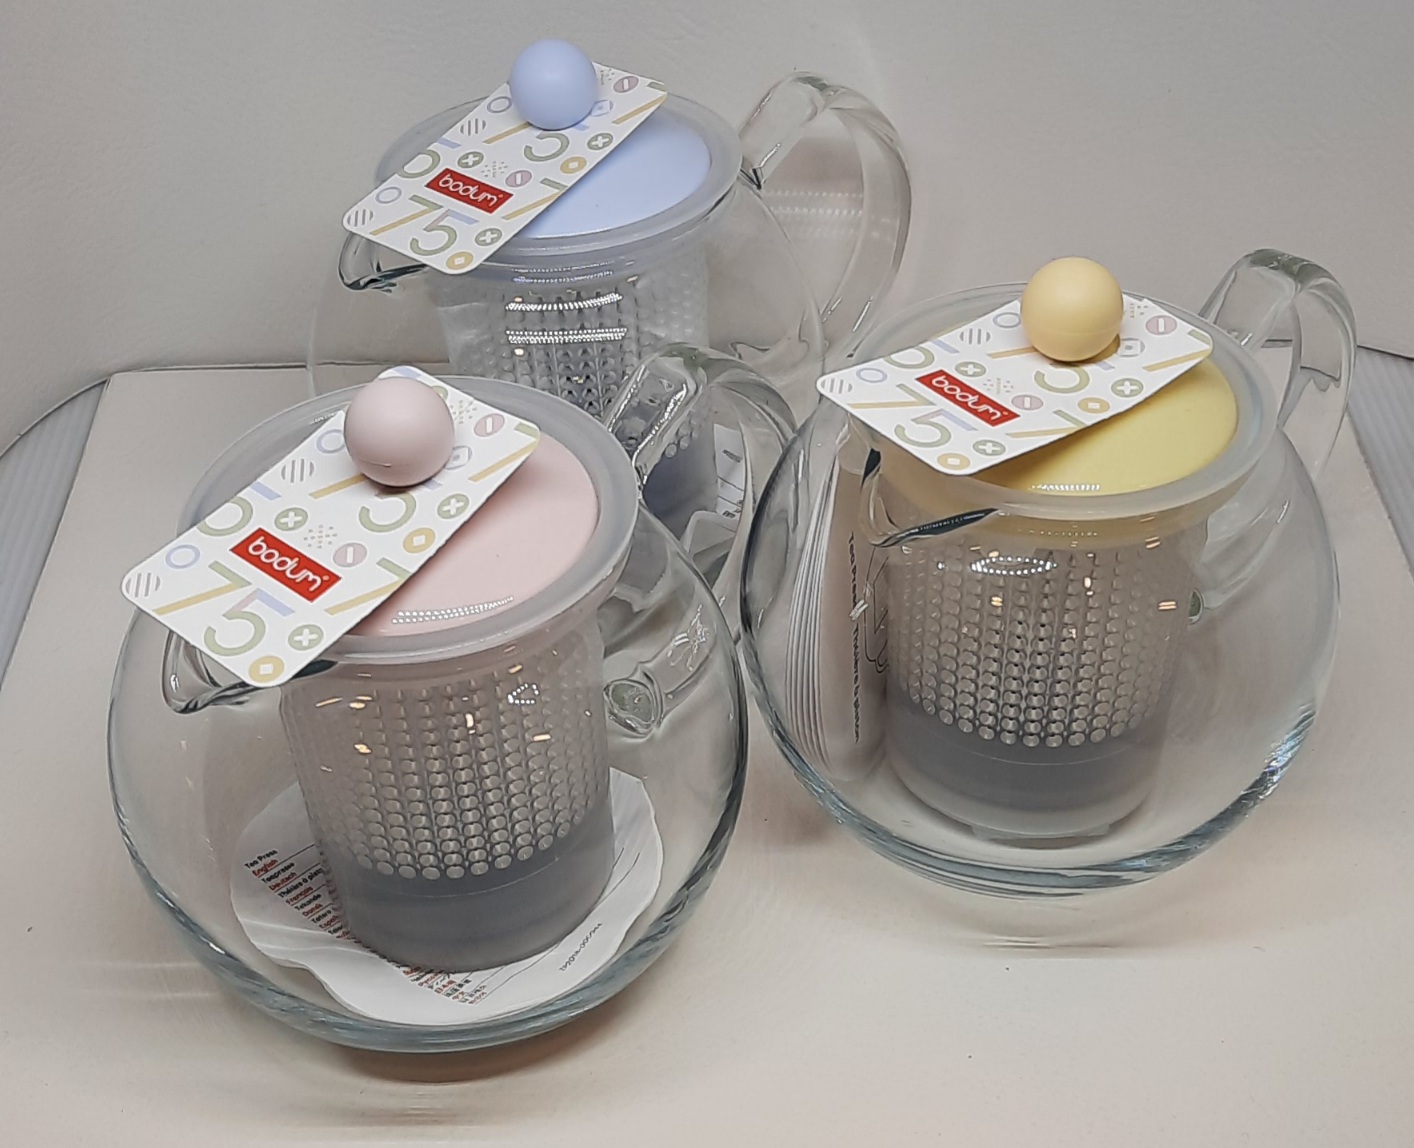  ASSAM Teebereiter mit Glasgriff 0,5l Deckel farblich sortiert!!! Kunststoffeinsatz 